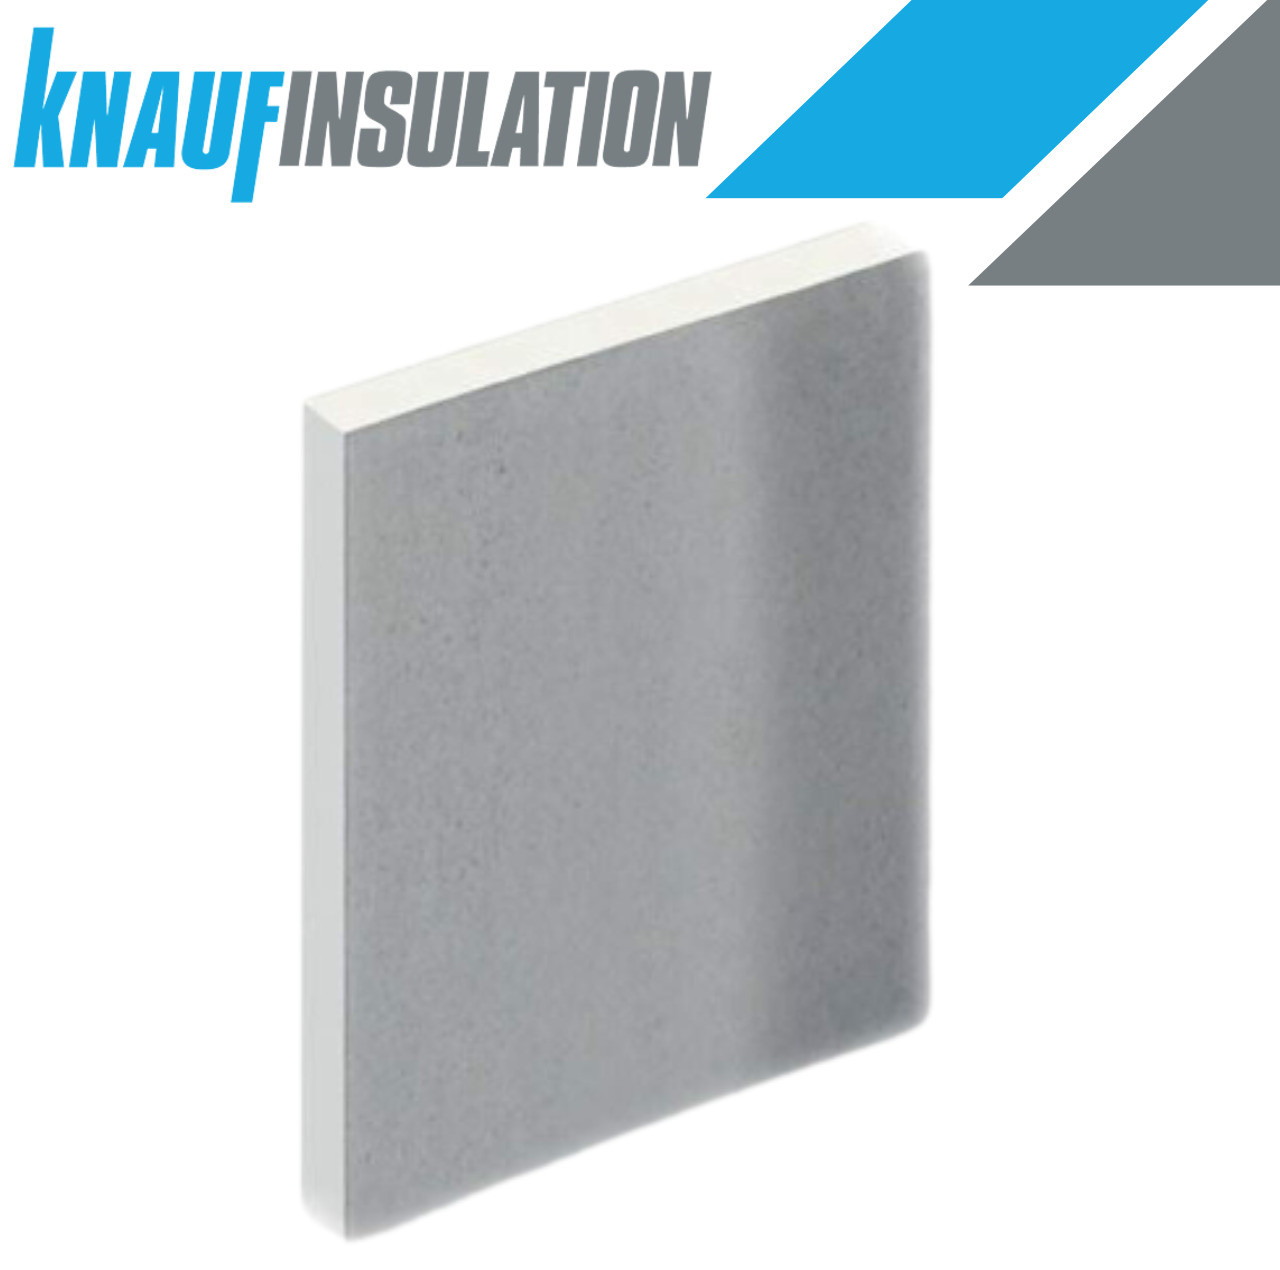 12.5mm - Knauf Wallboard Tapered Edge Plasterboard - 2.4m x 1.2m x 12.5mm  858164 KNF-50193